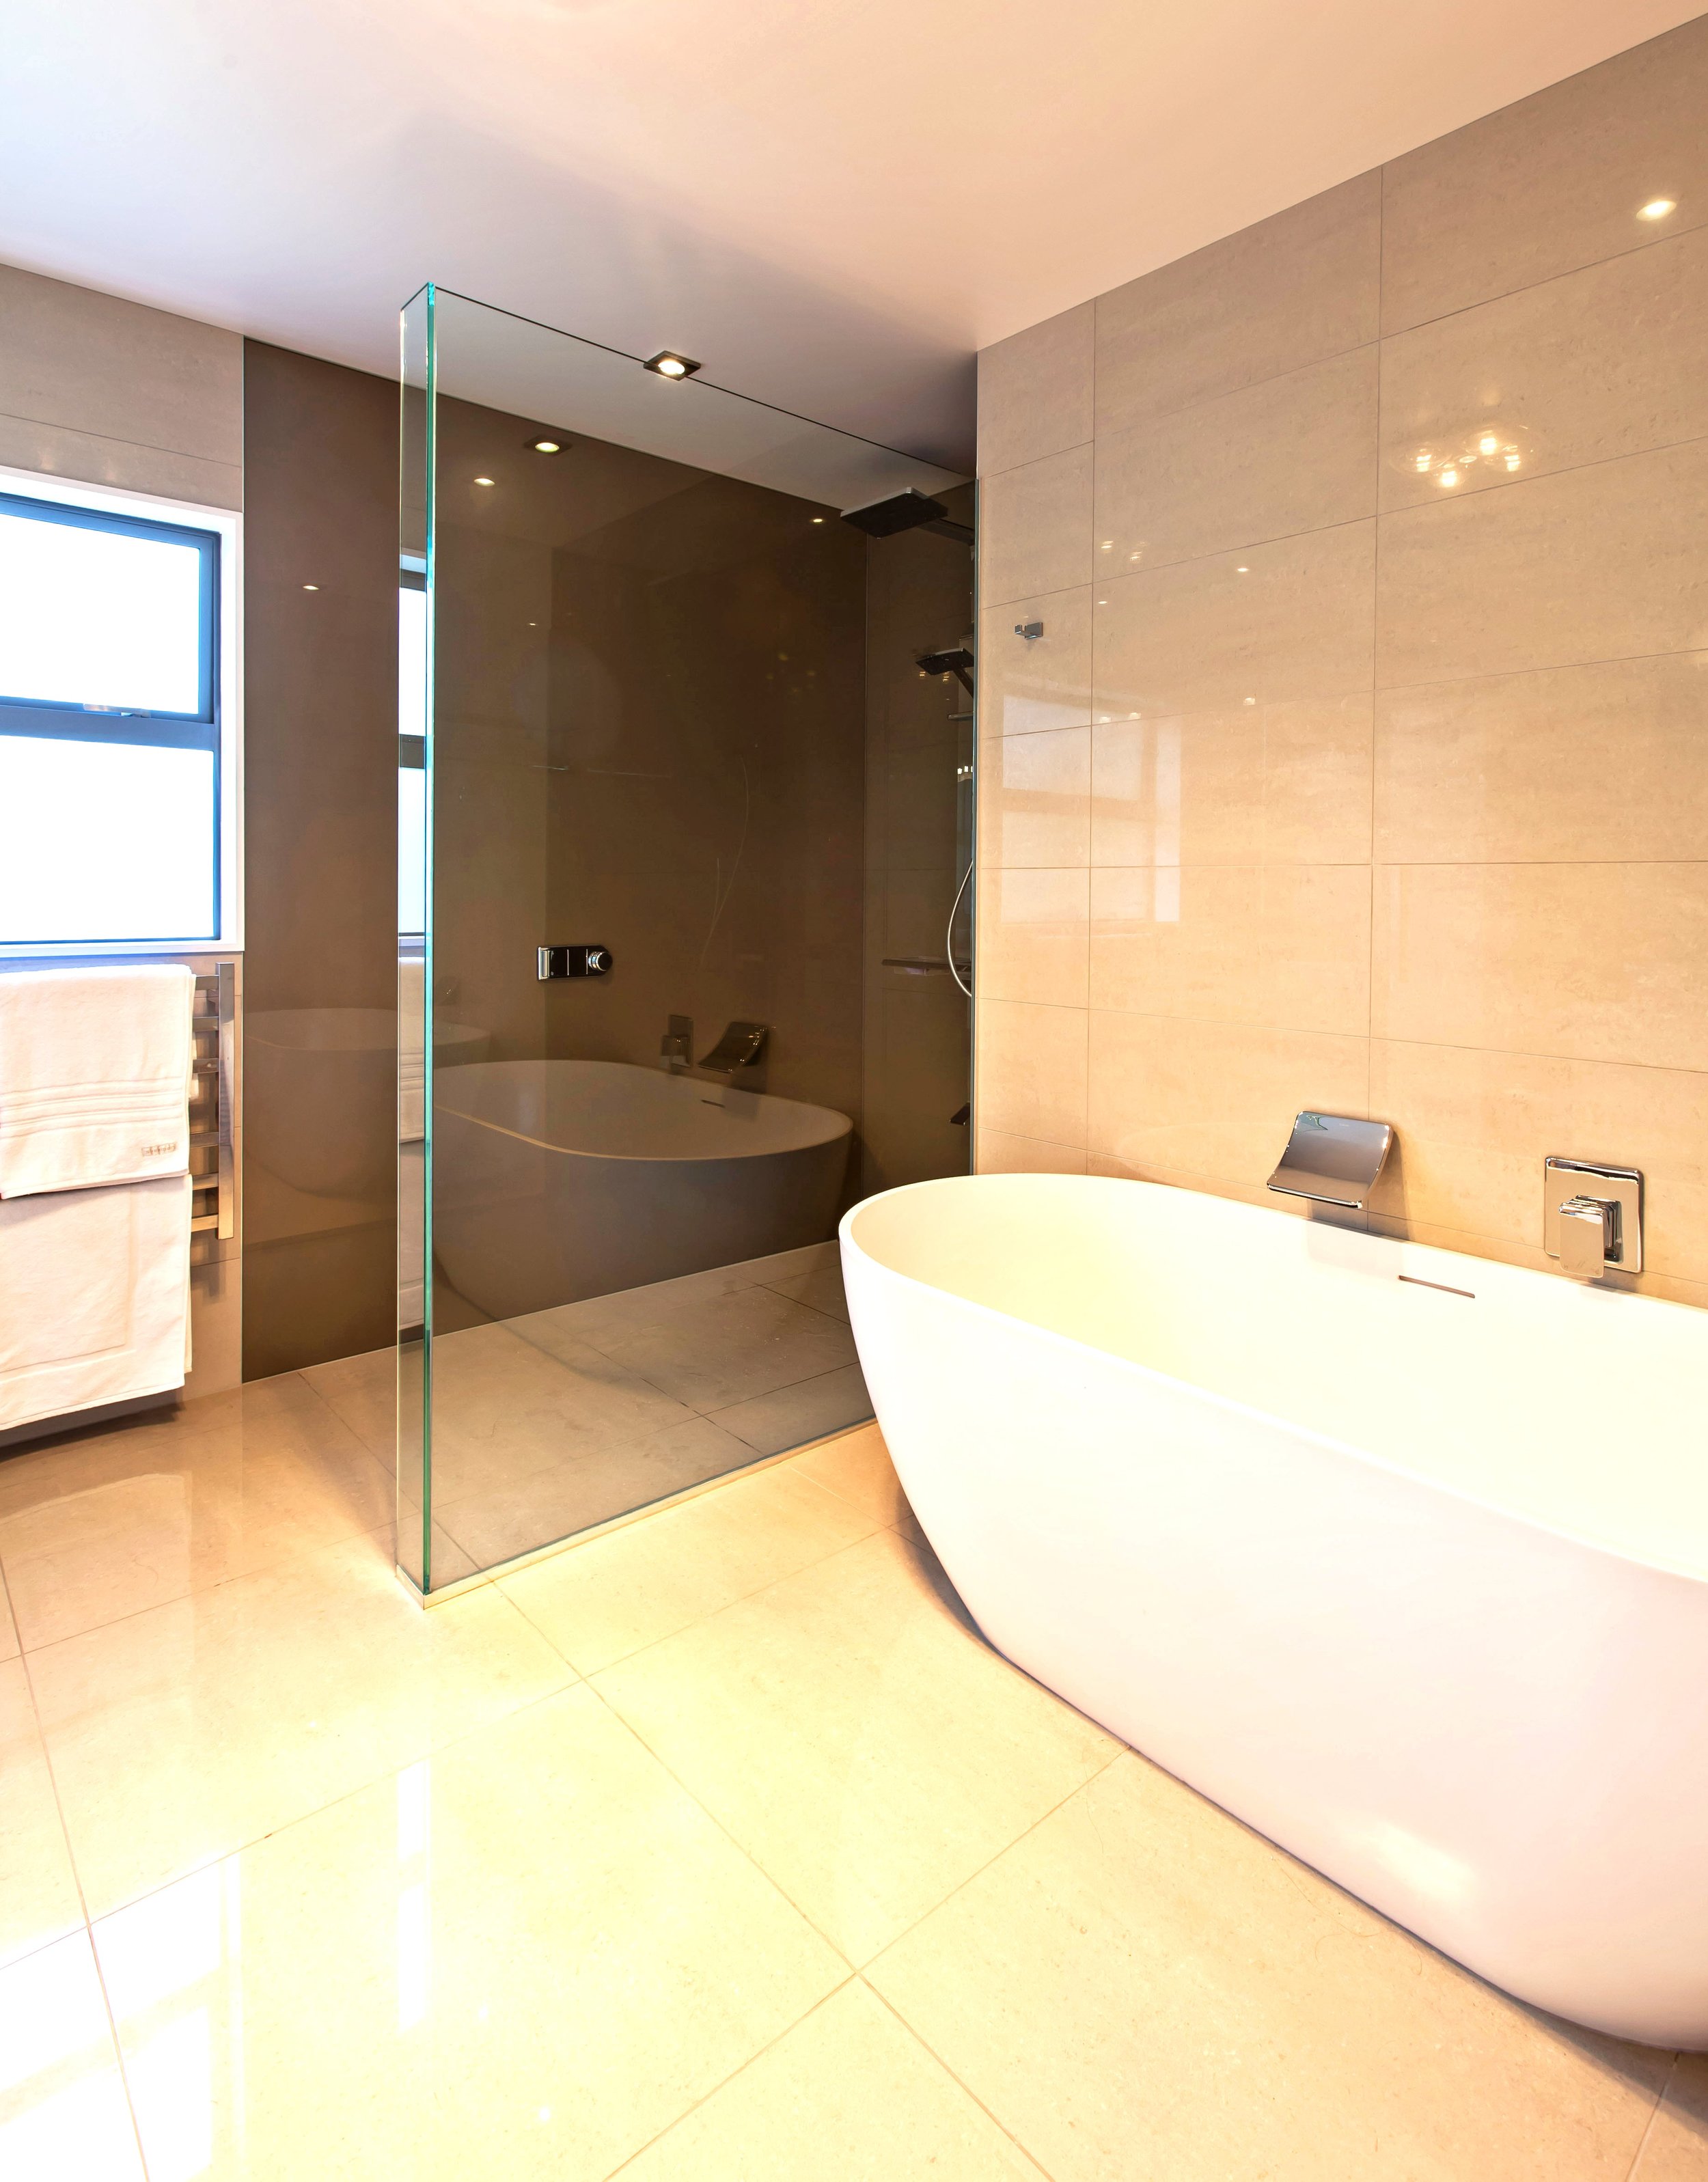 Frameless glass shower in master bathroom